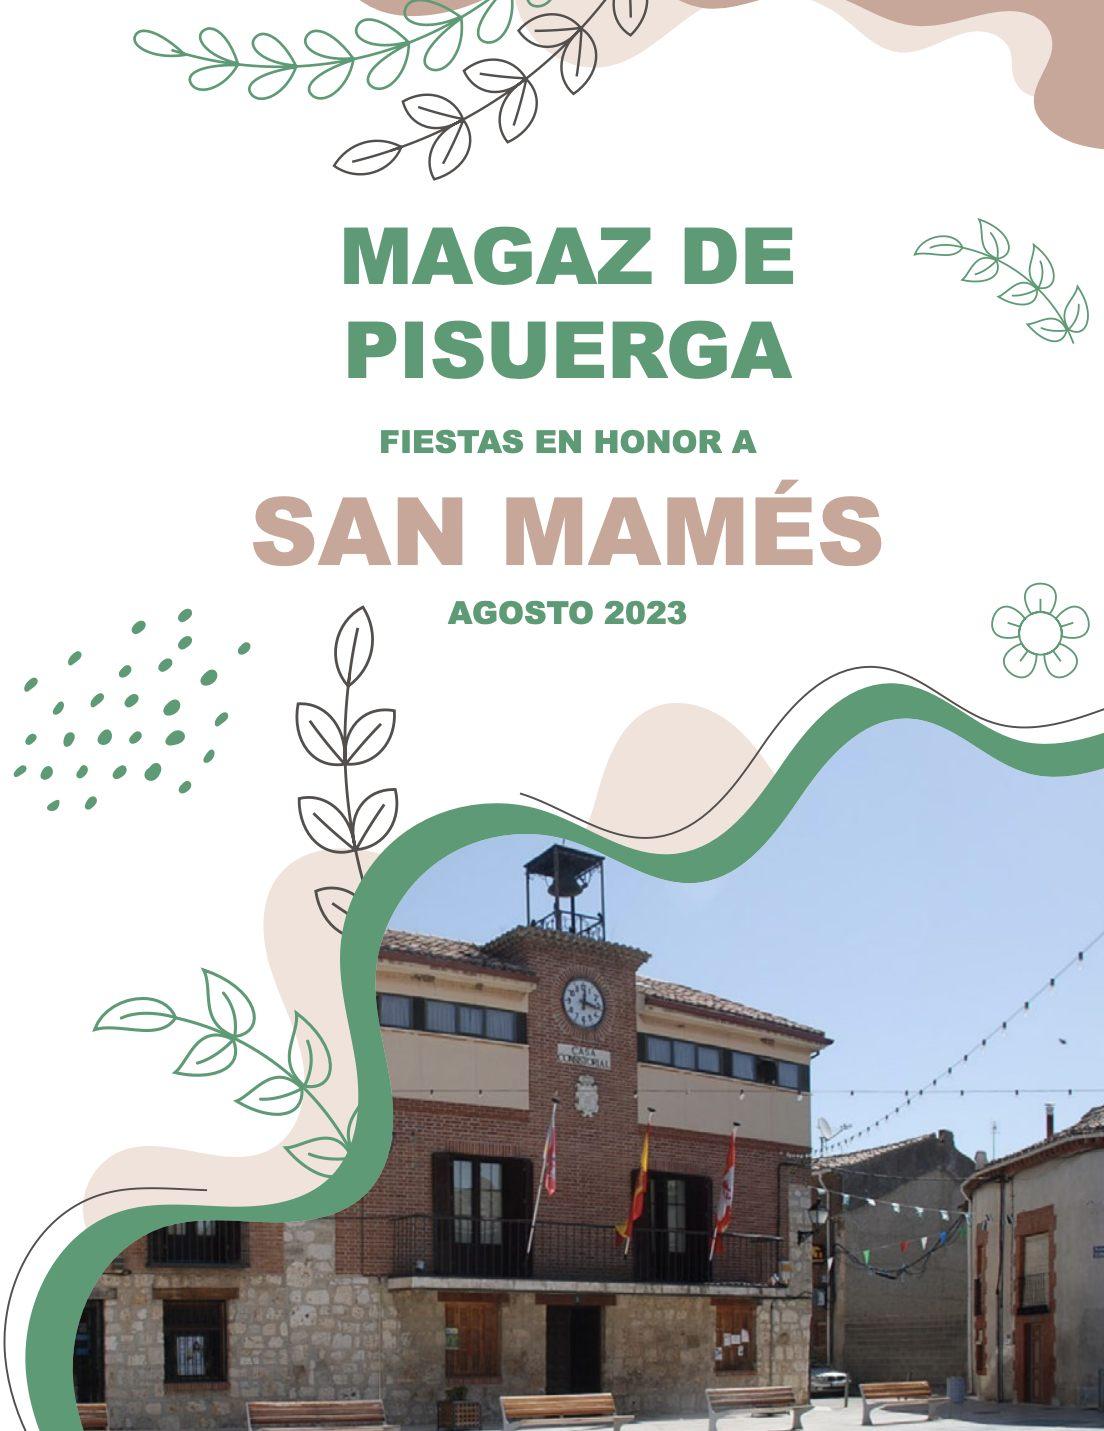 Fiestas en Honor a San Mames - Magaz de Pisuerga0